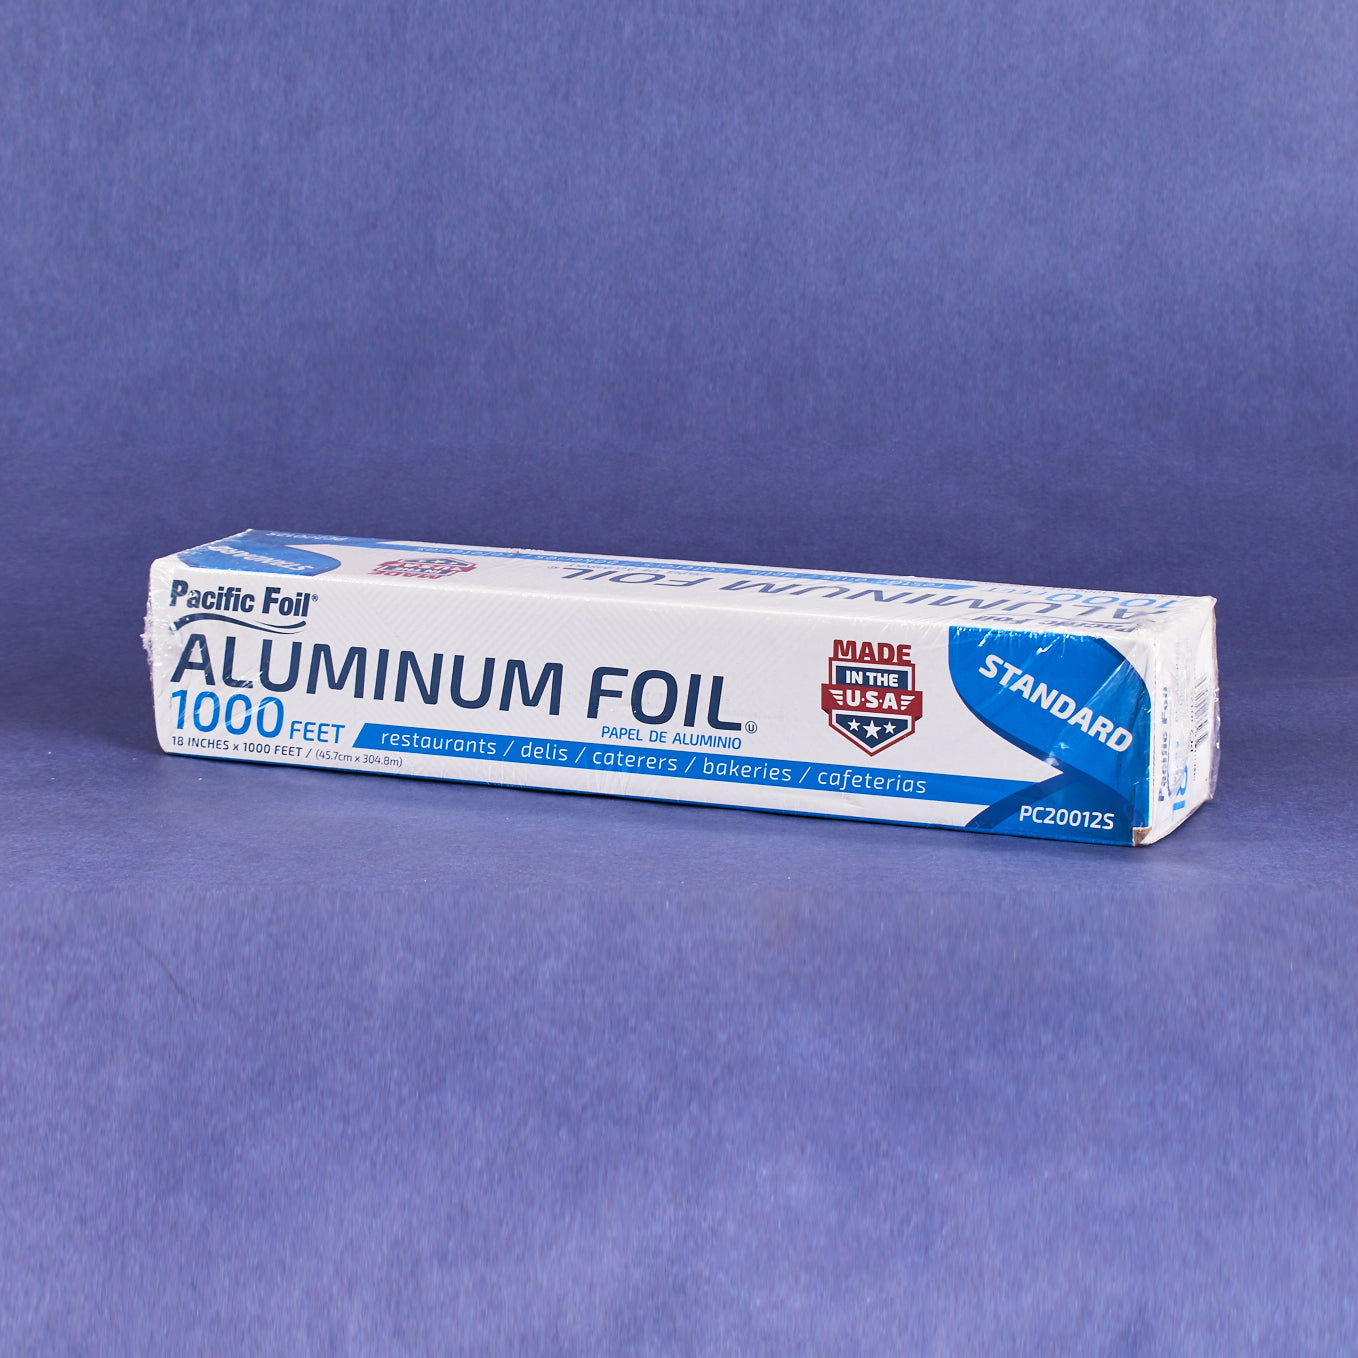 Aluminum Foil 18"1000ft